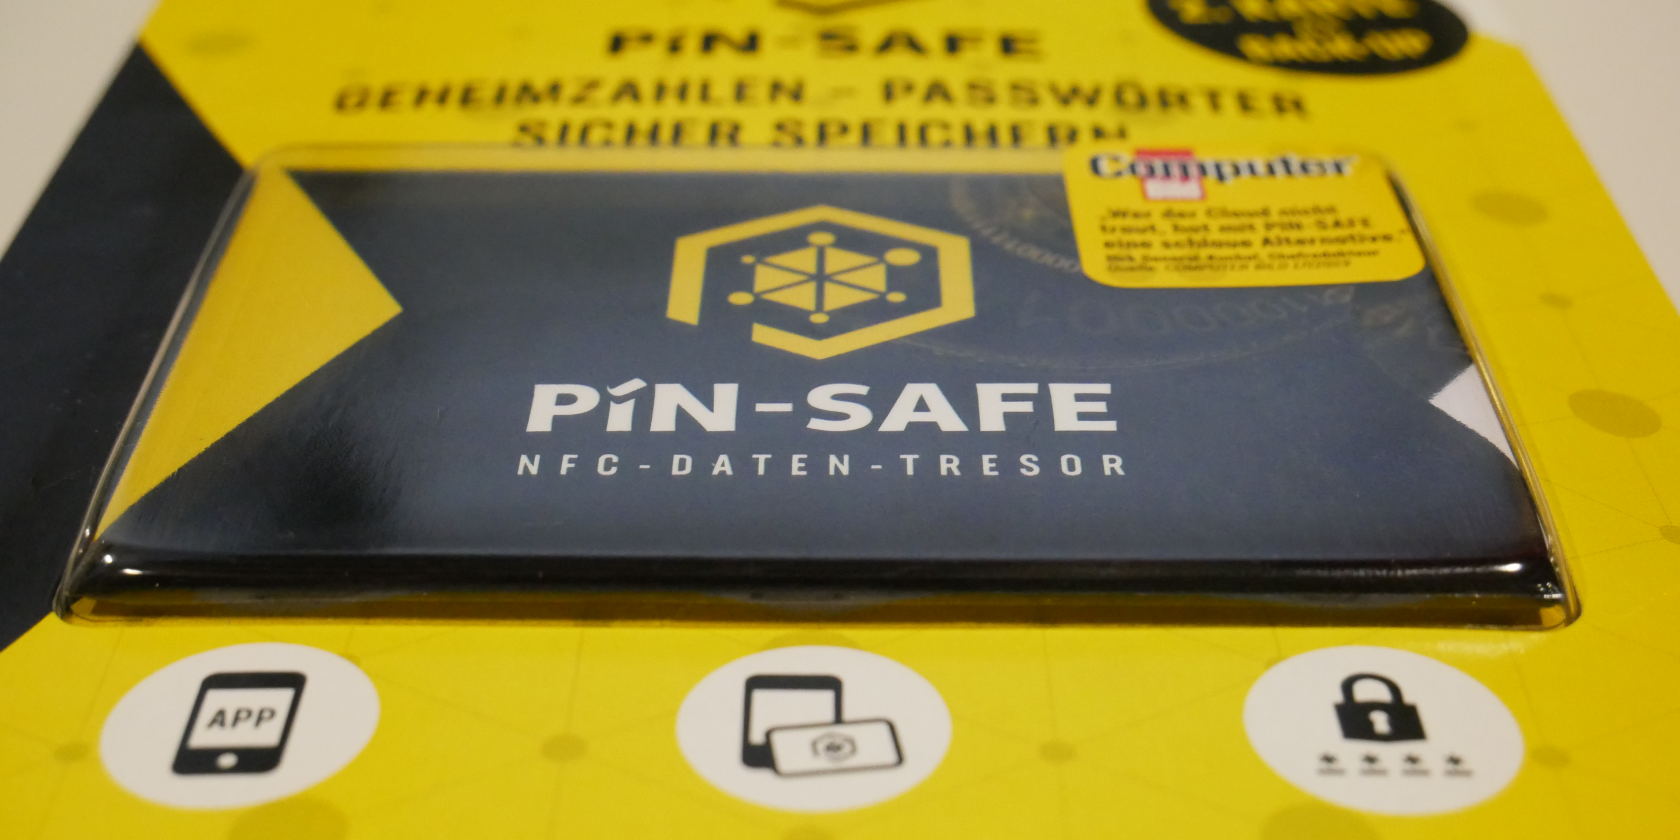 PIN-SAFE hardware wallet seen at IFA 2019